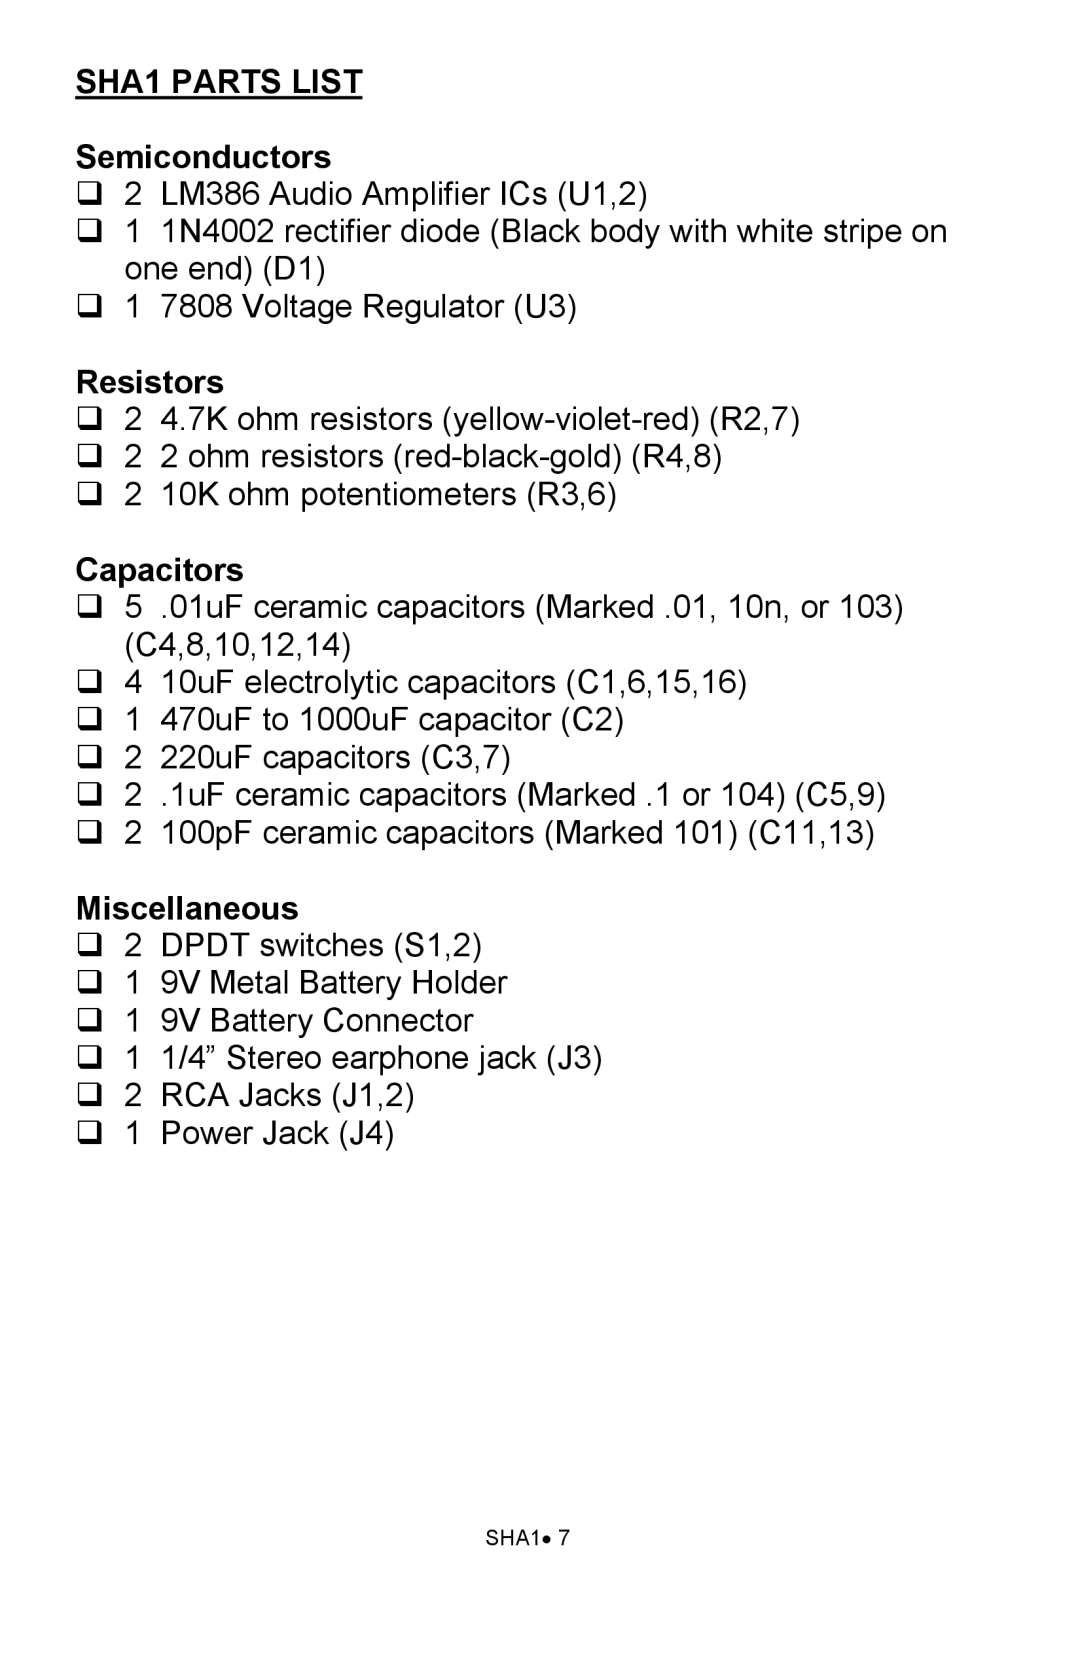 Ramsey Electronics manual SHA1 PARTS LIST Semiconductors, Resistors, Capacitors, Miscellaneous 